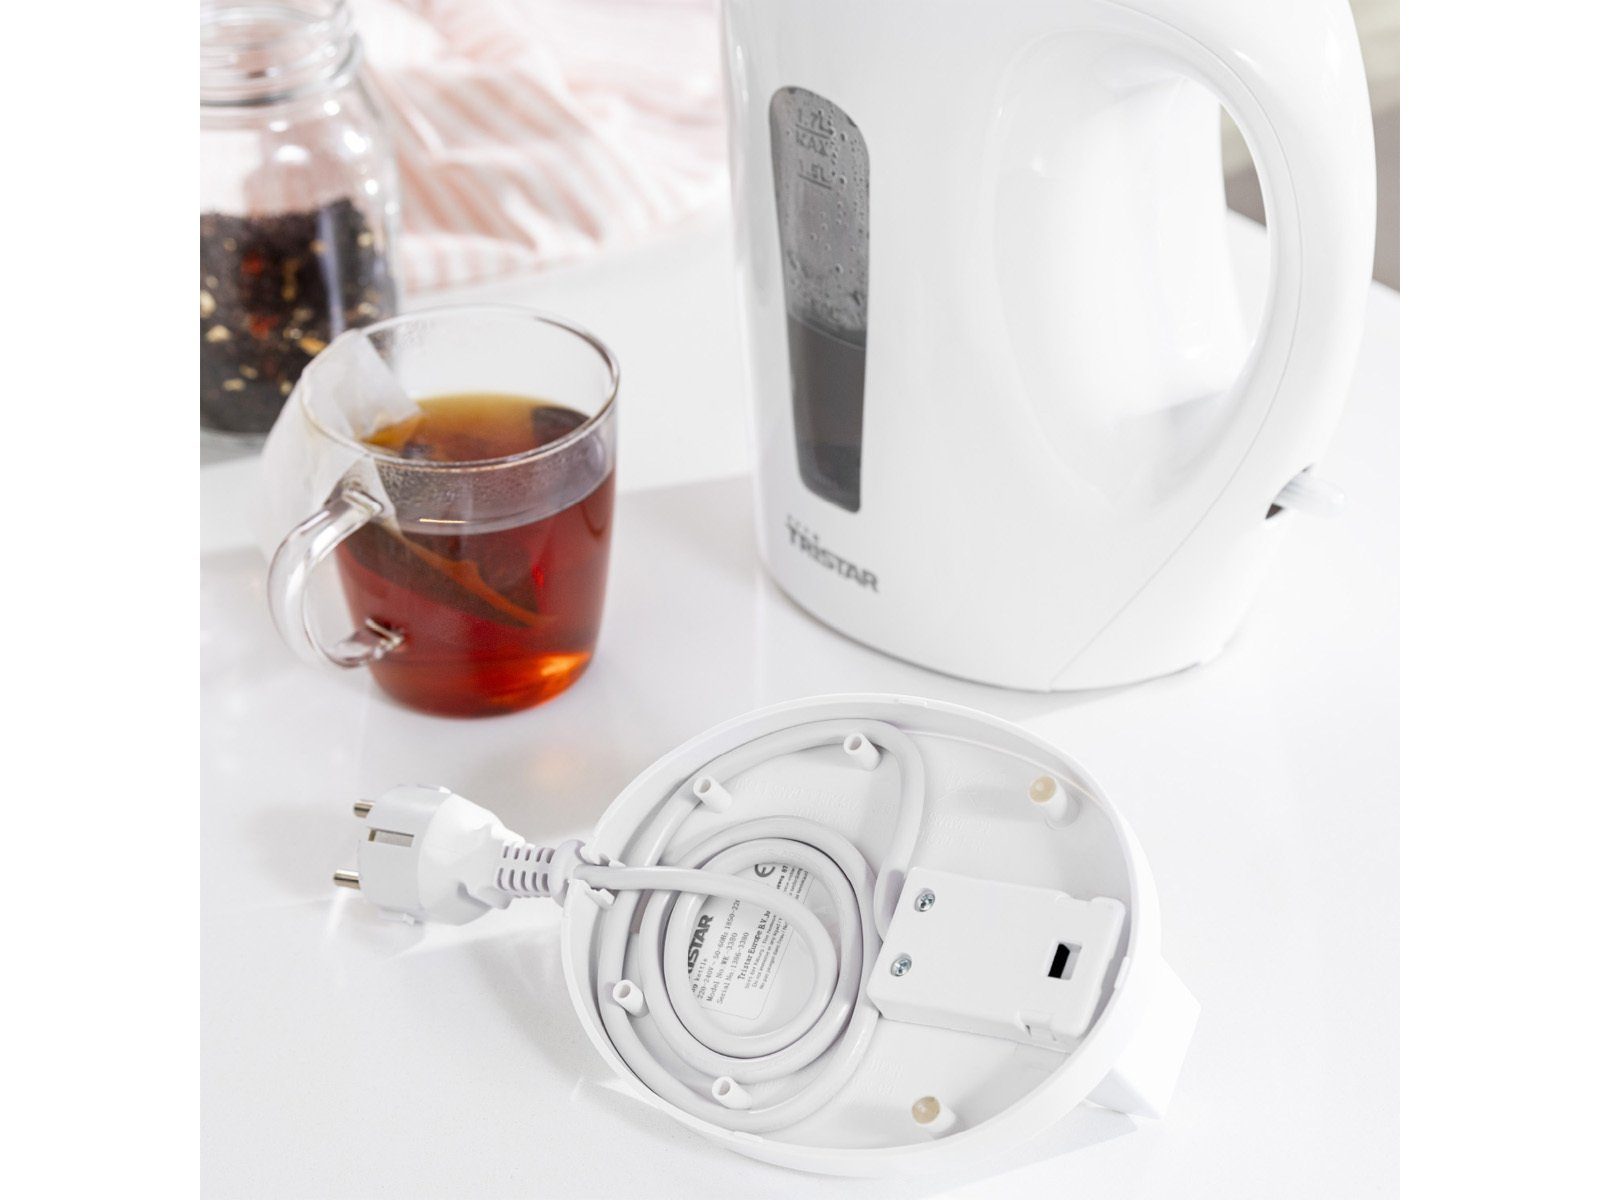 Tristar Wasserkocher, 1.7 l, 2200 ohne Tee leise schnell, Großer Weiß Heißwasserbereiter elektrischer W, Kabel